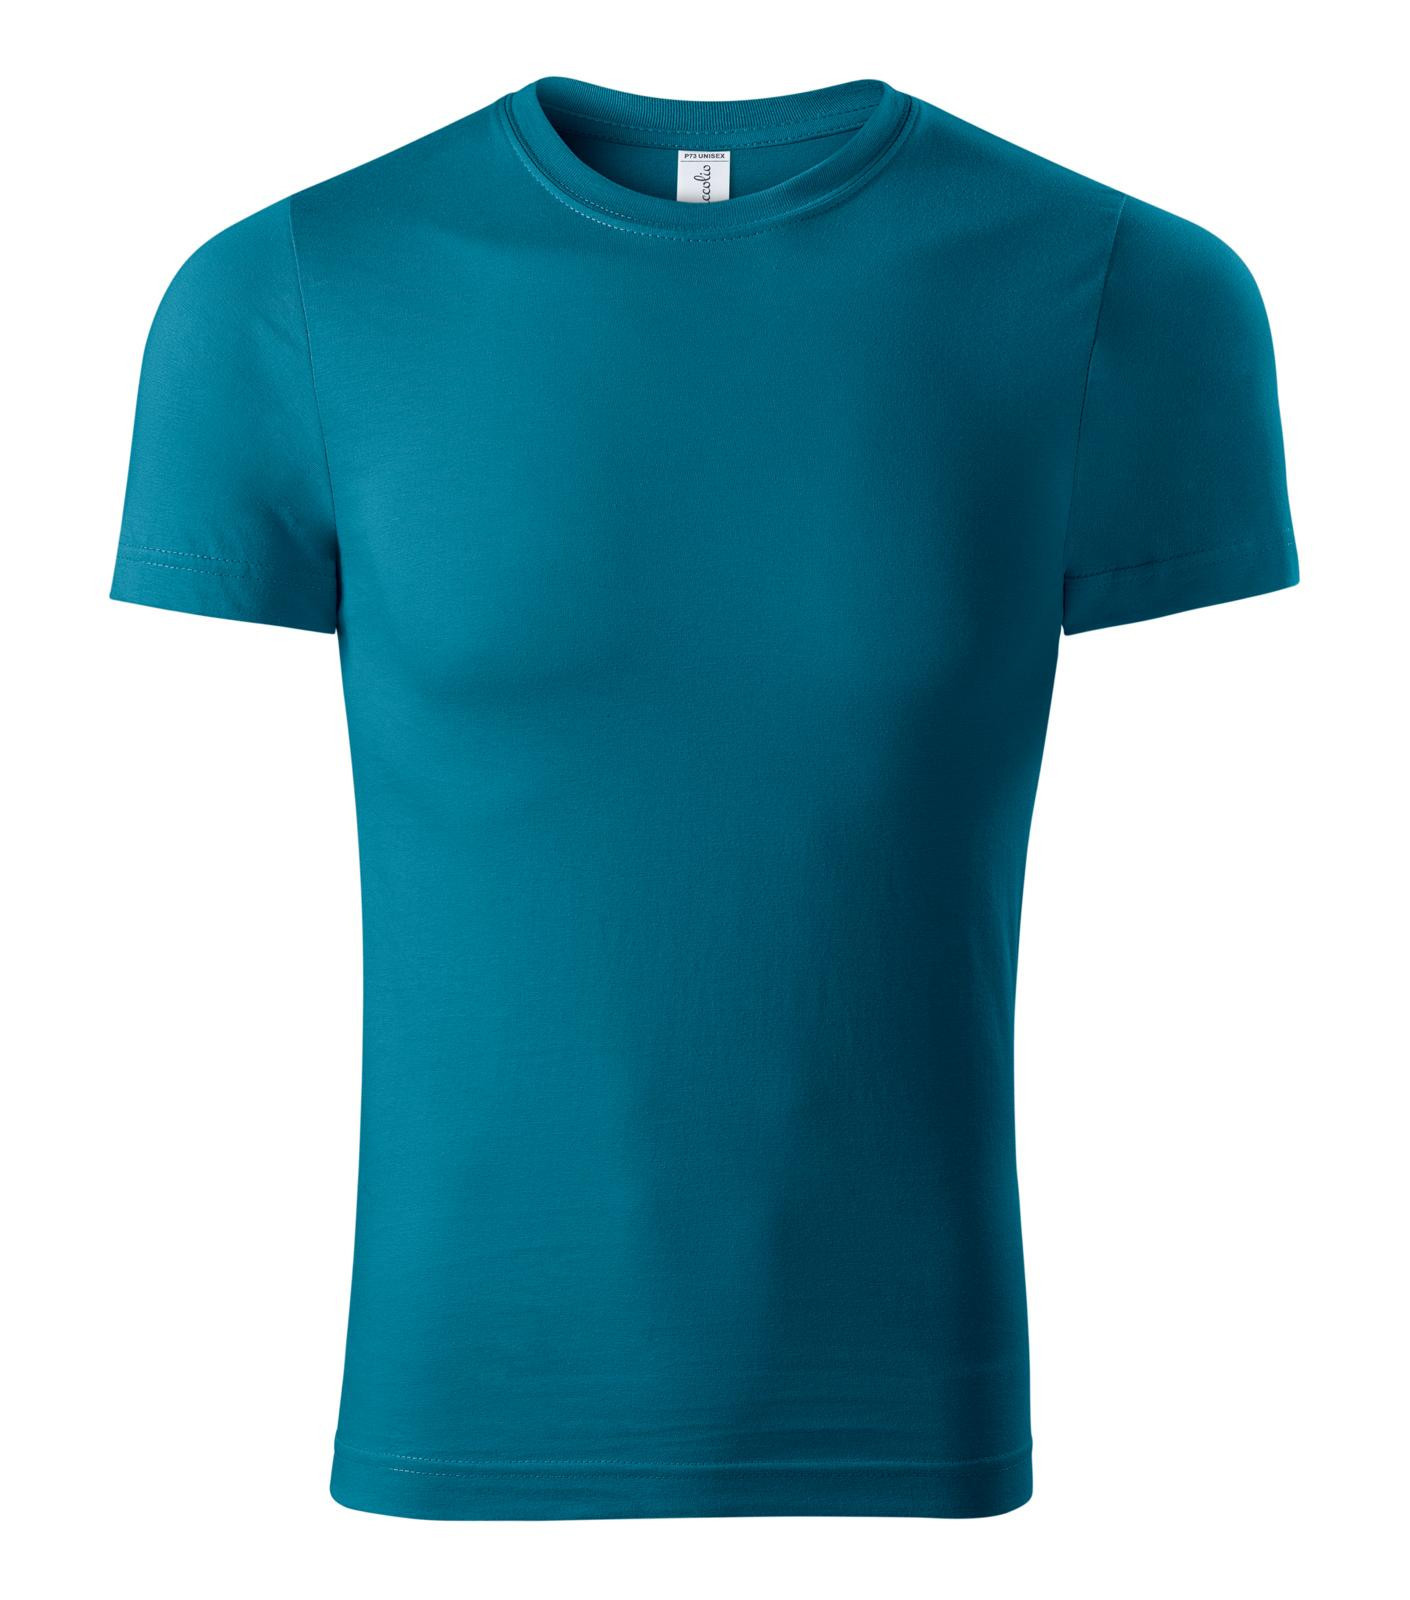 Unisex tričko Piccolio Paint P73 - veľkosť: M, farba: petrolejová